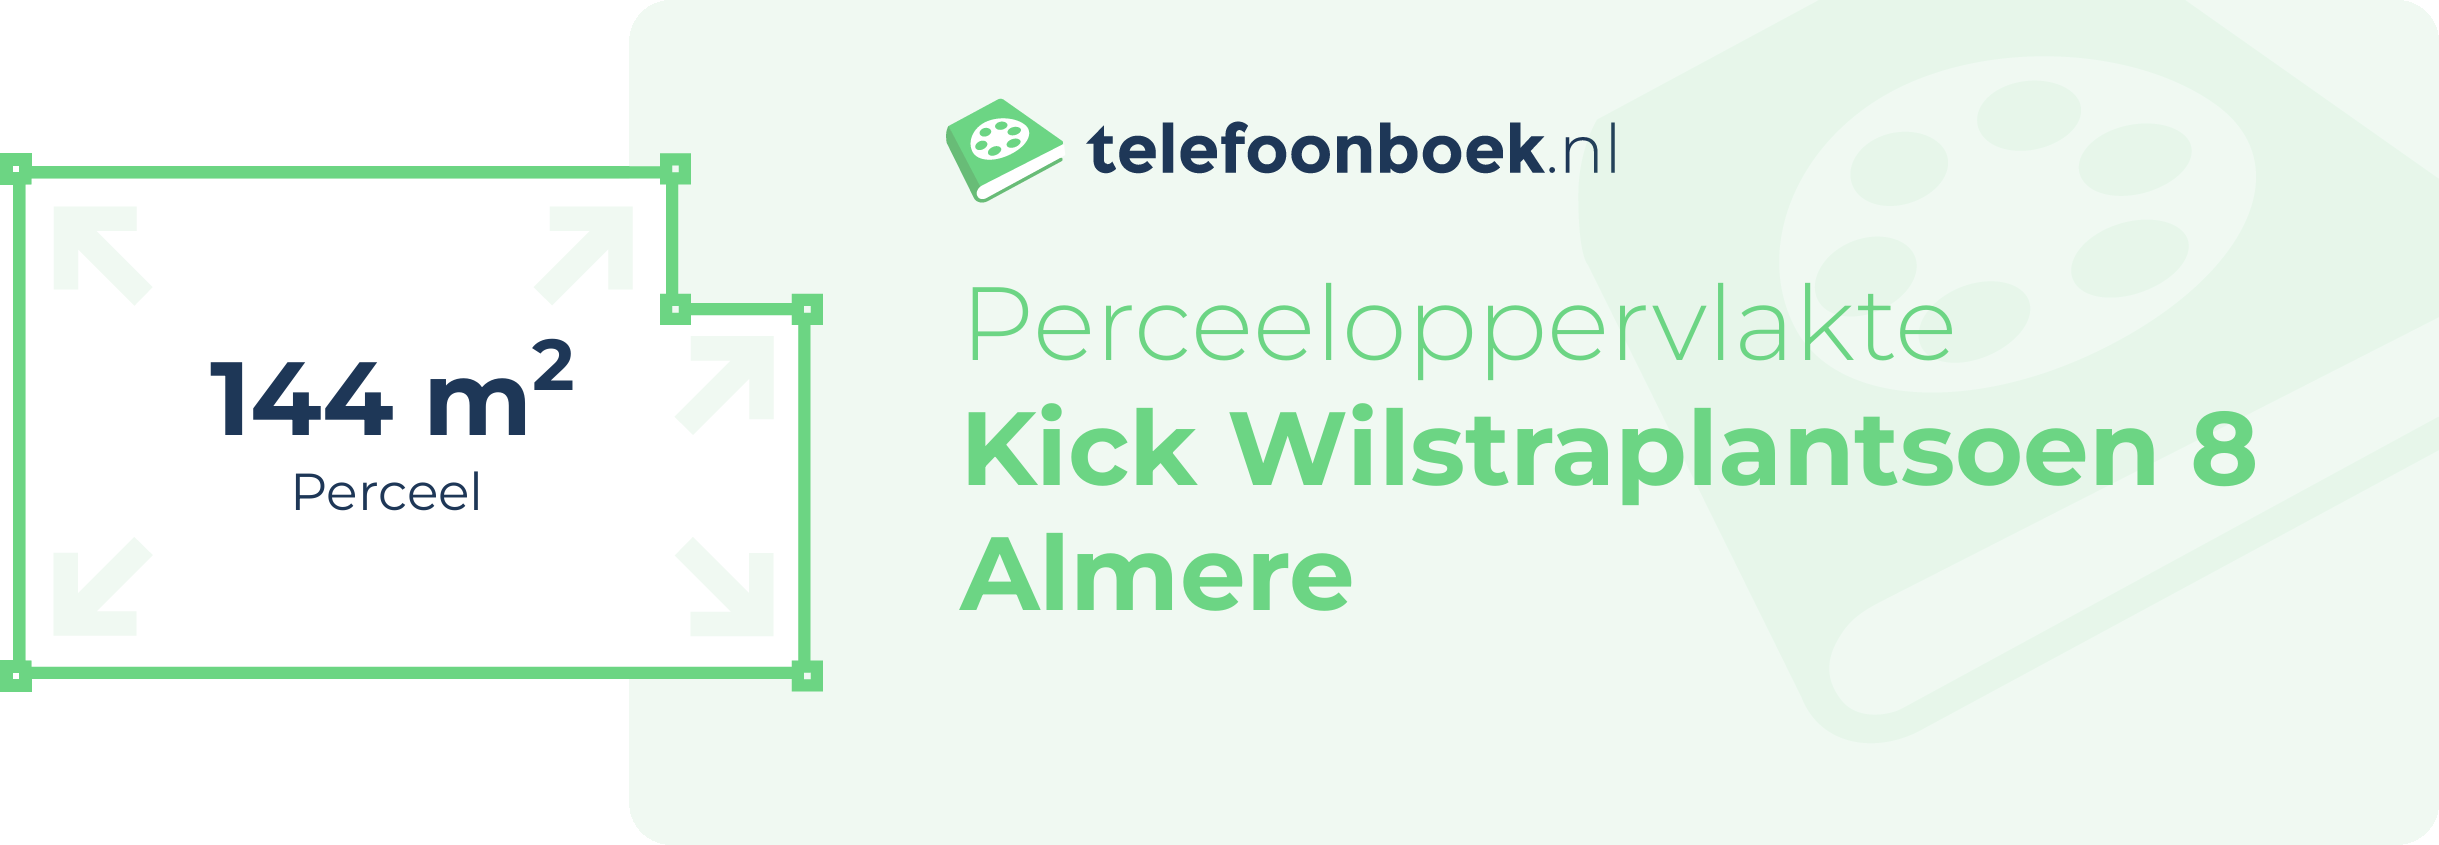 Perceeloppervlakte Kick Wilstraplantsoen 8 Almere